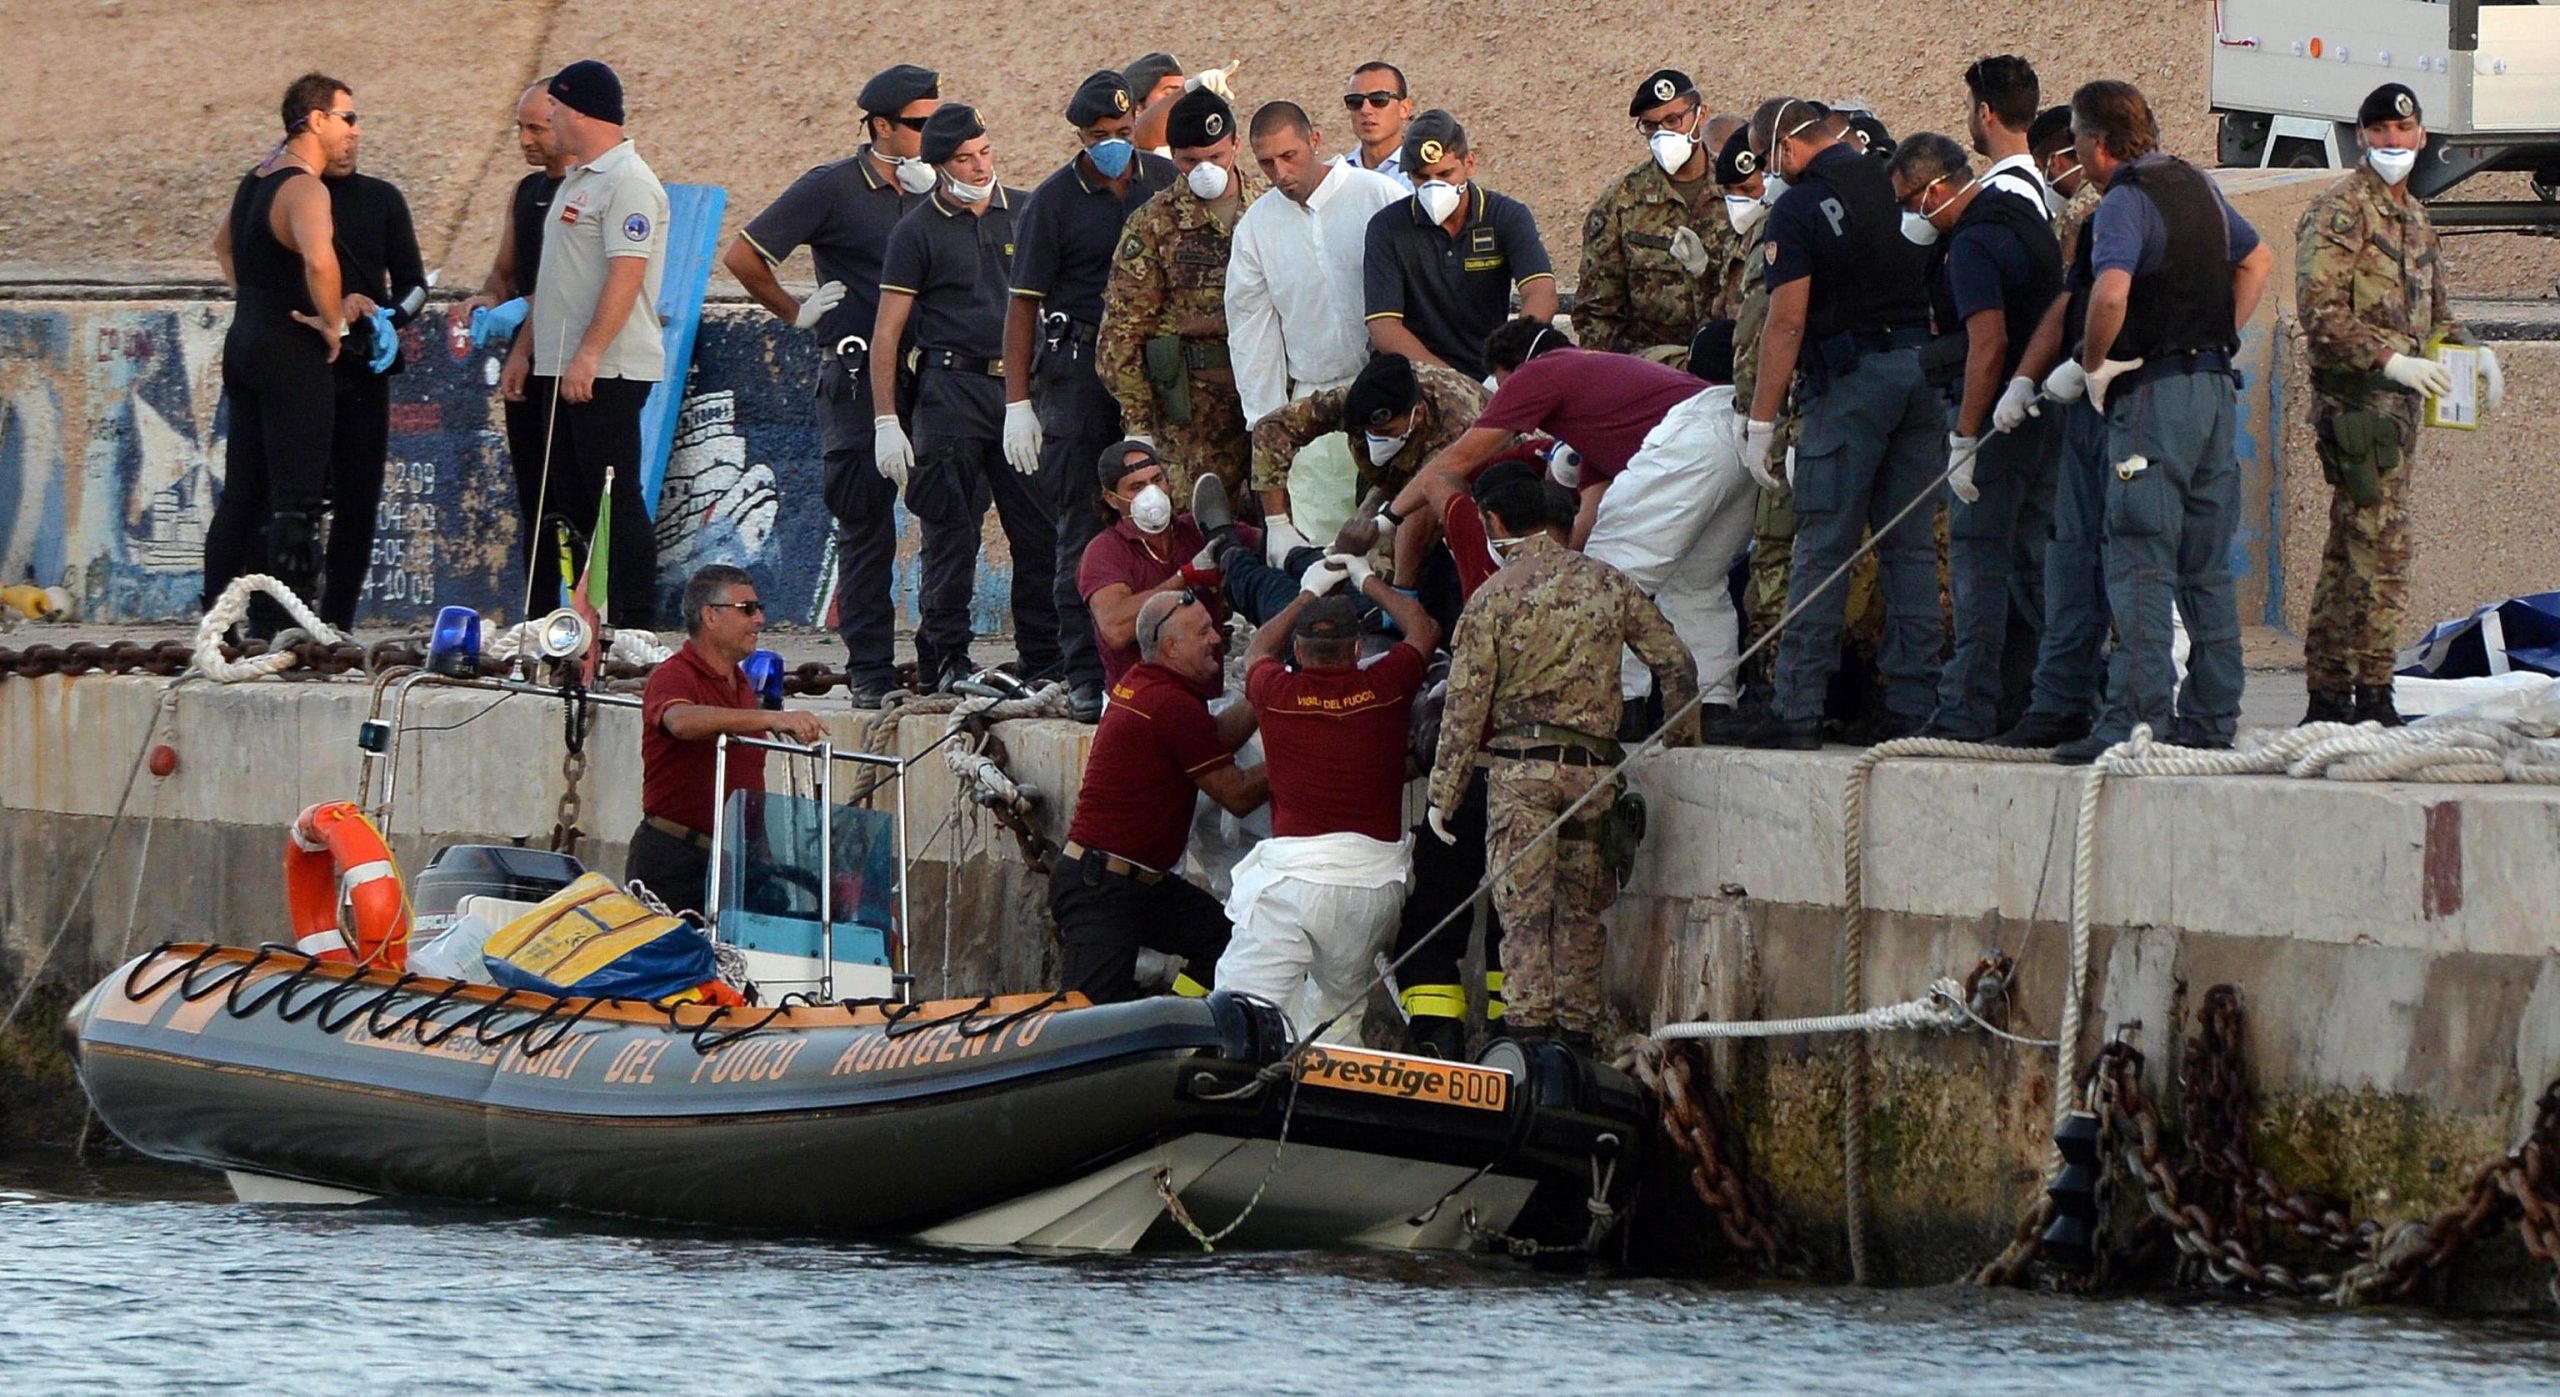 Το ναυάγιο στη Λαμπεντούζα. Πνίγηκαν περισσότεροι από 350 άνθρωποι. Αφετηρία η Λιβύη. Βιασμοί και βασανιστήρια πάνω στο σκάφος